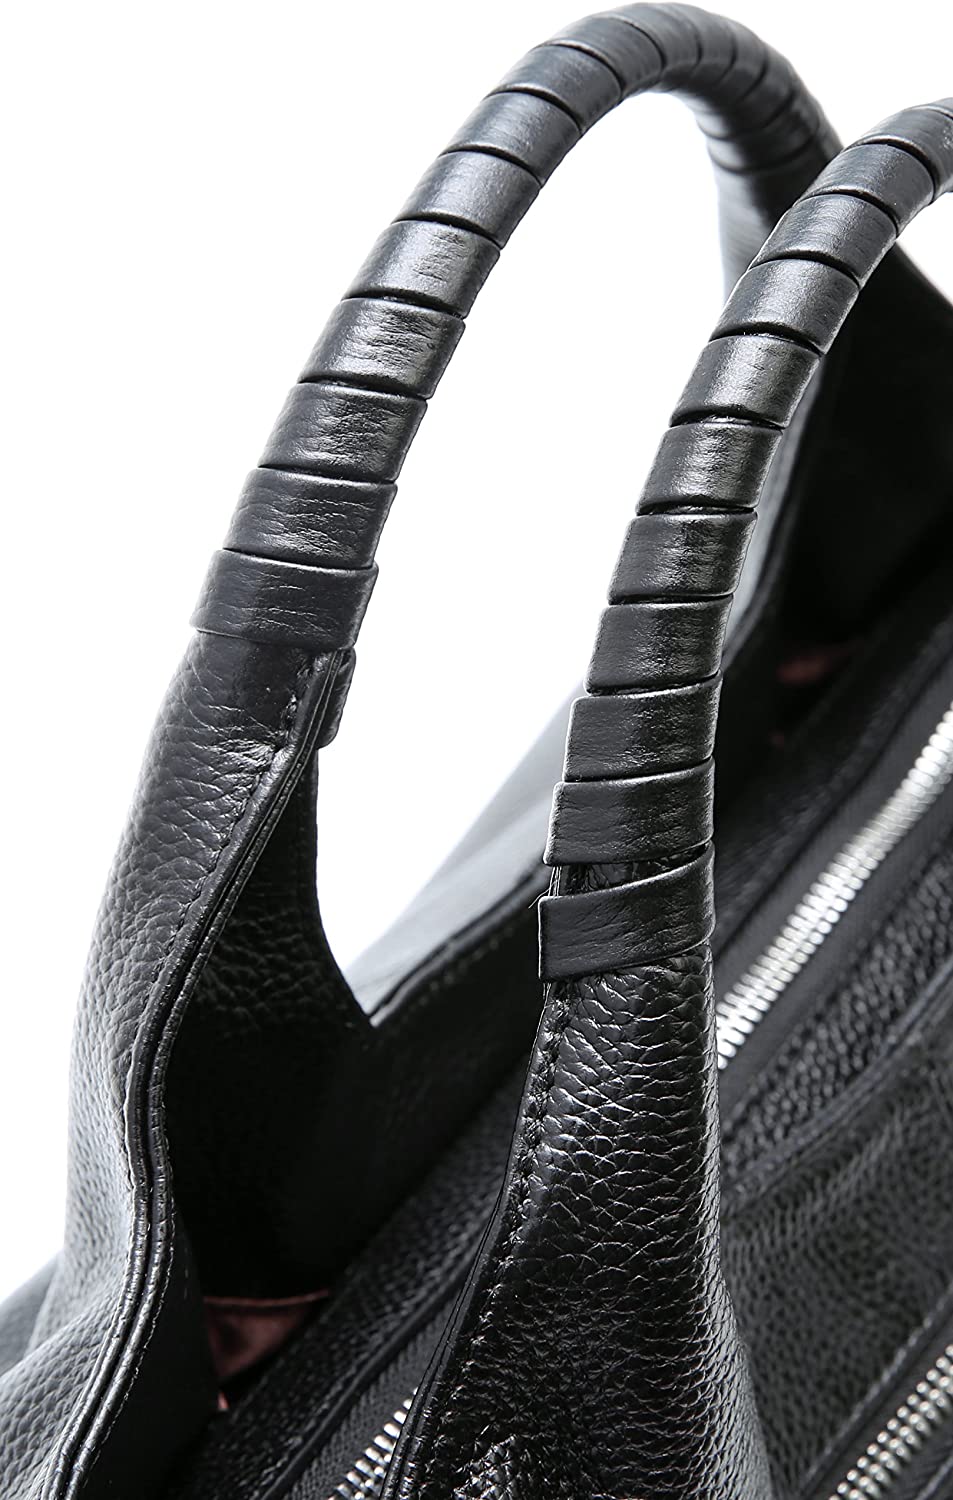 Sexy Dance Women Handbags Genuine Leather Work Tote Shoulder Bag Top Handle Satchel Ladies Hobo Crossbody Bags Black - image 5 of 6